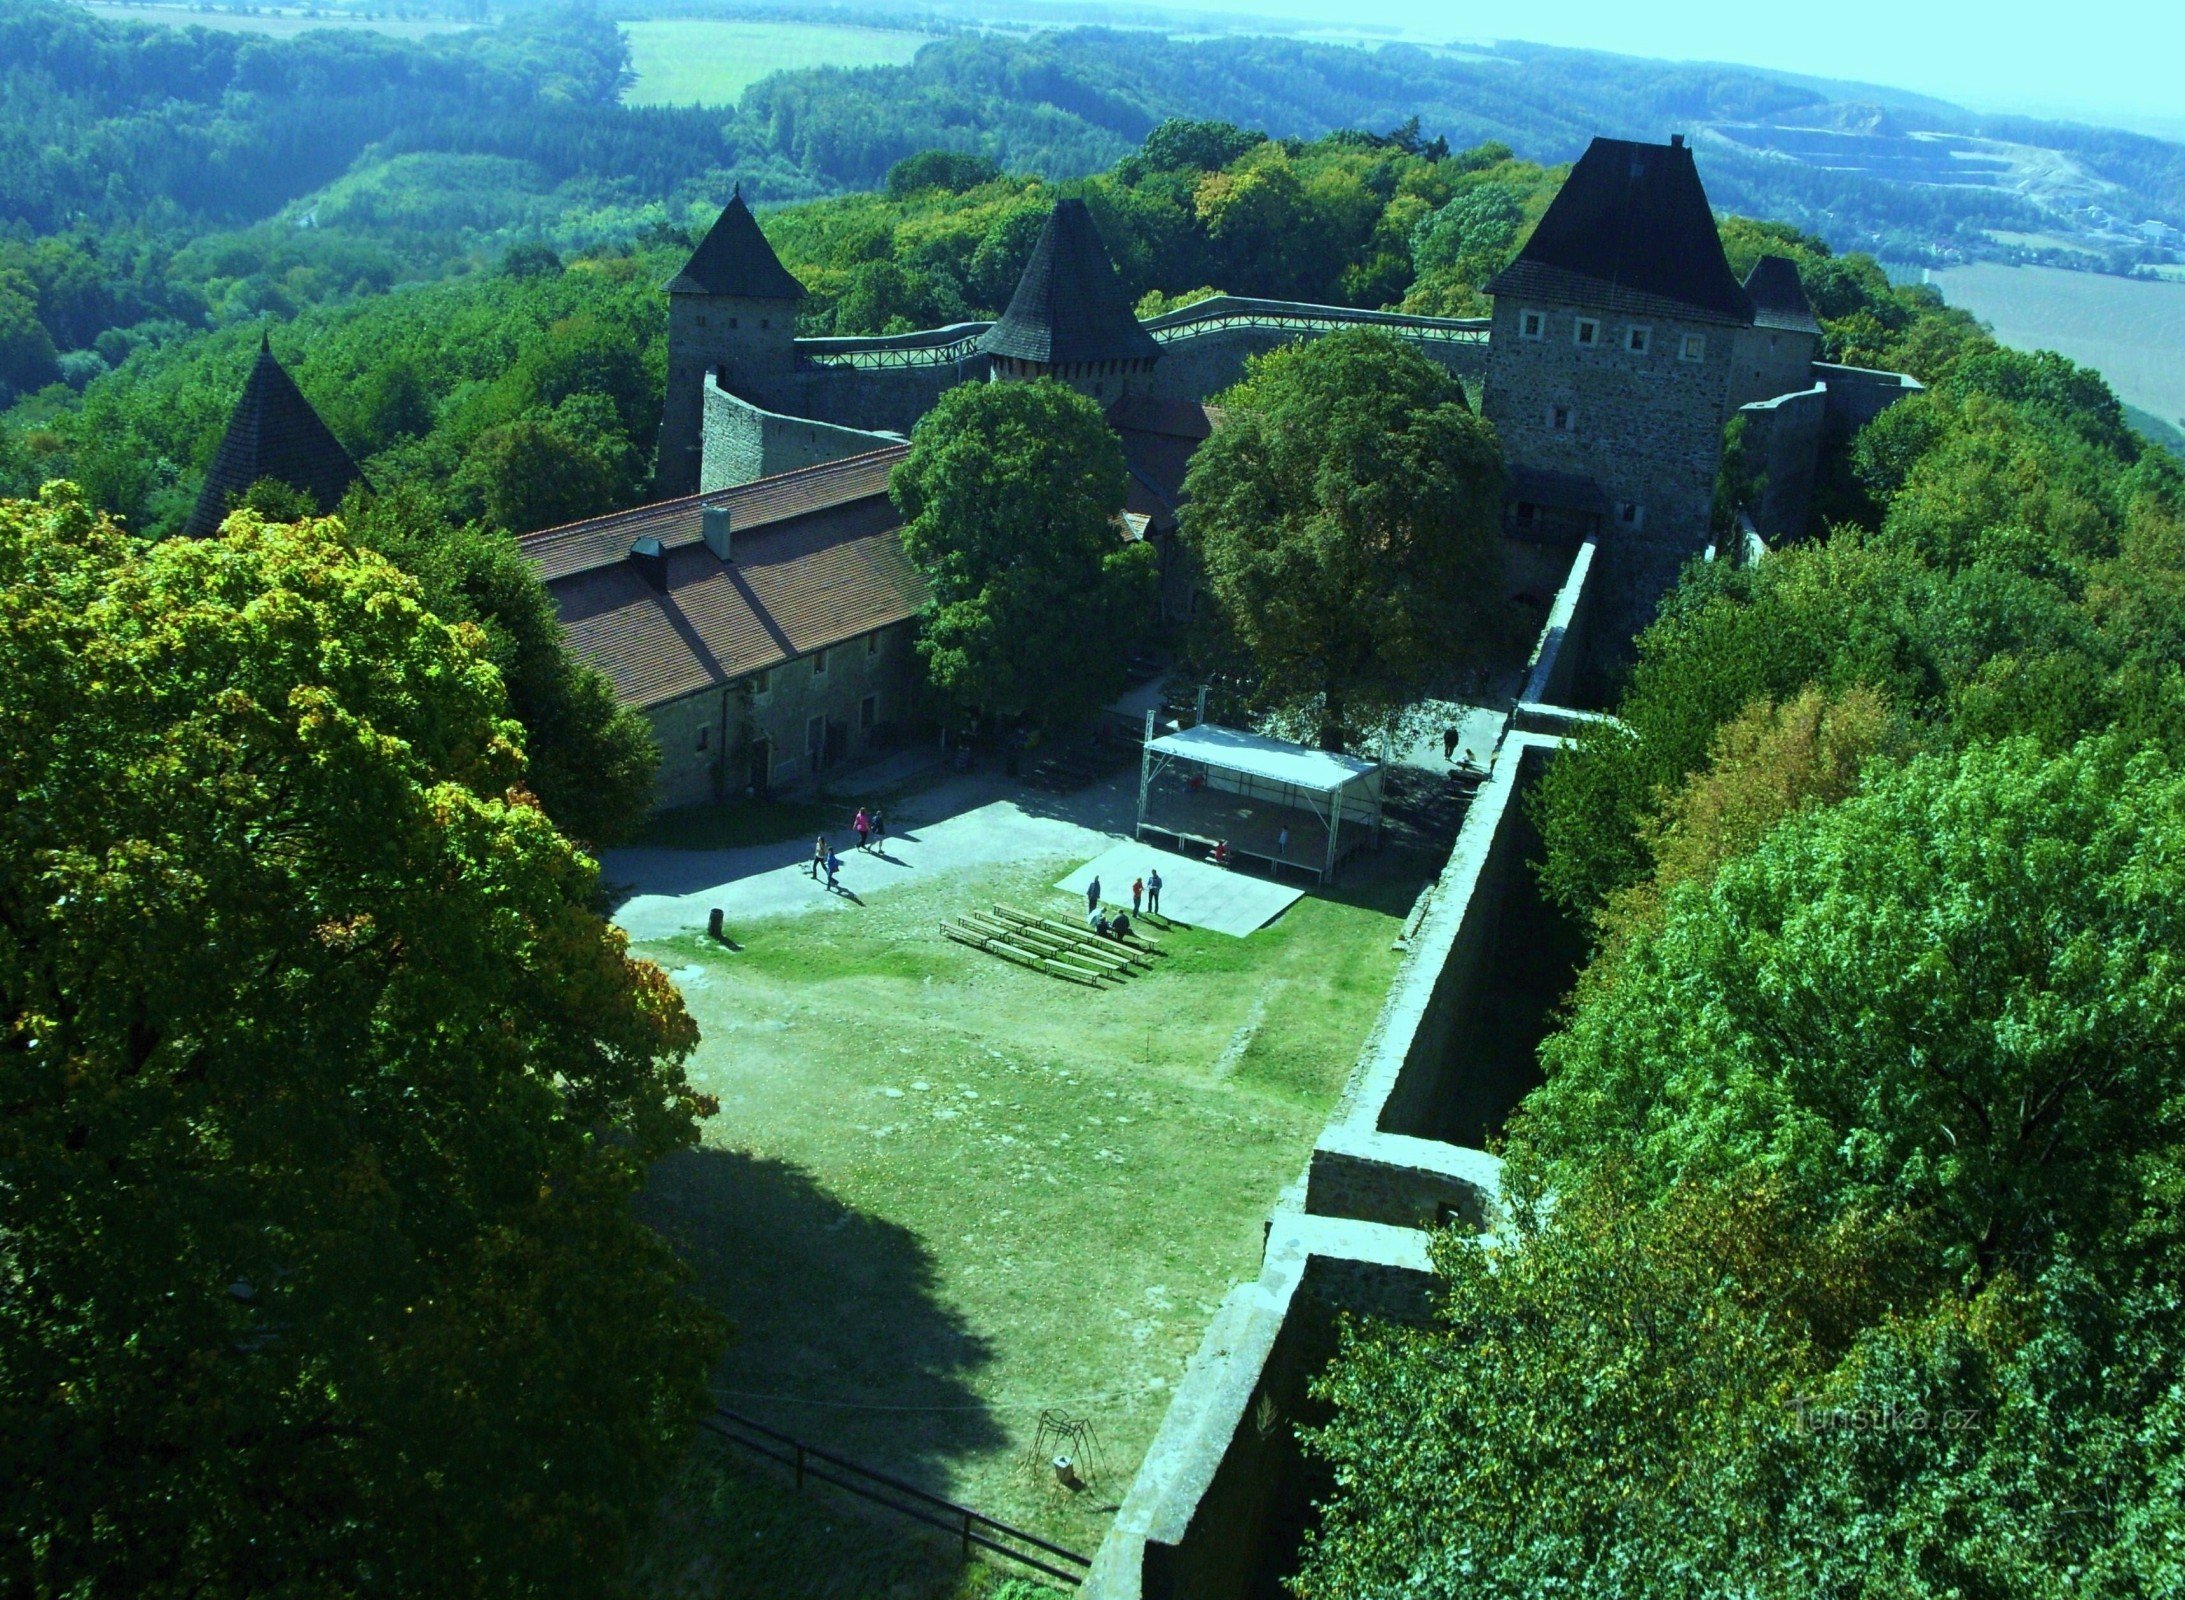 Behind the history at Helfštýn Castle